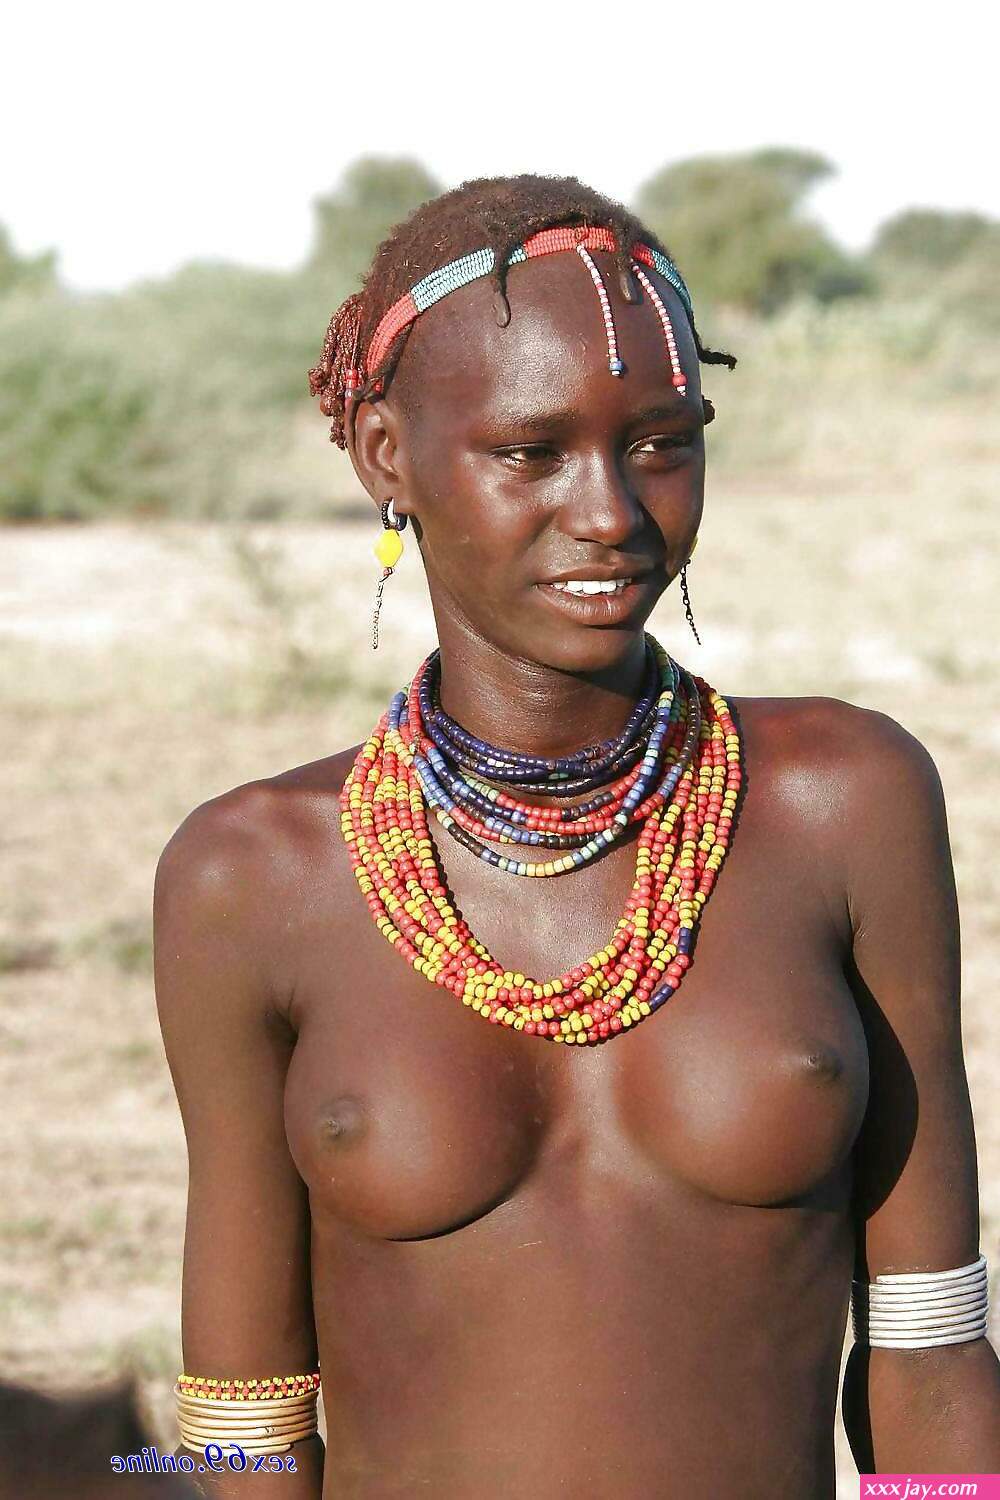 Naked African Tribal Girls Sex - black naked tribal girls - XxxJay